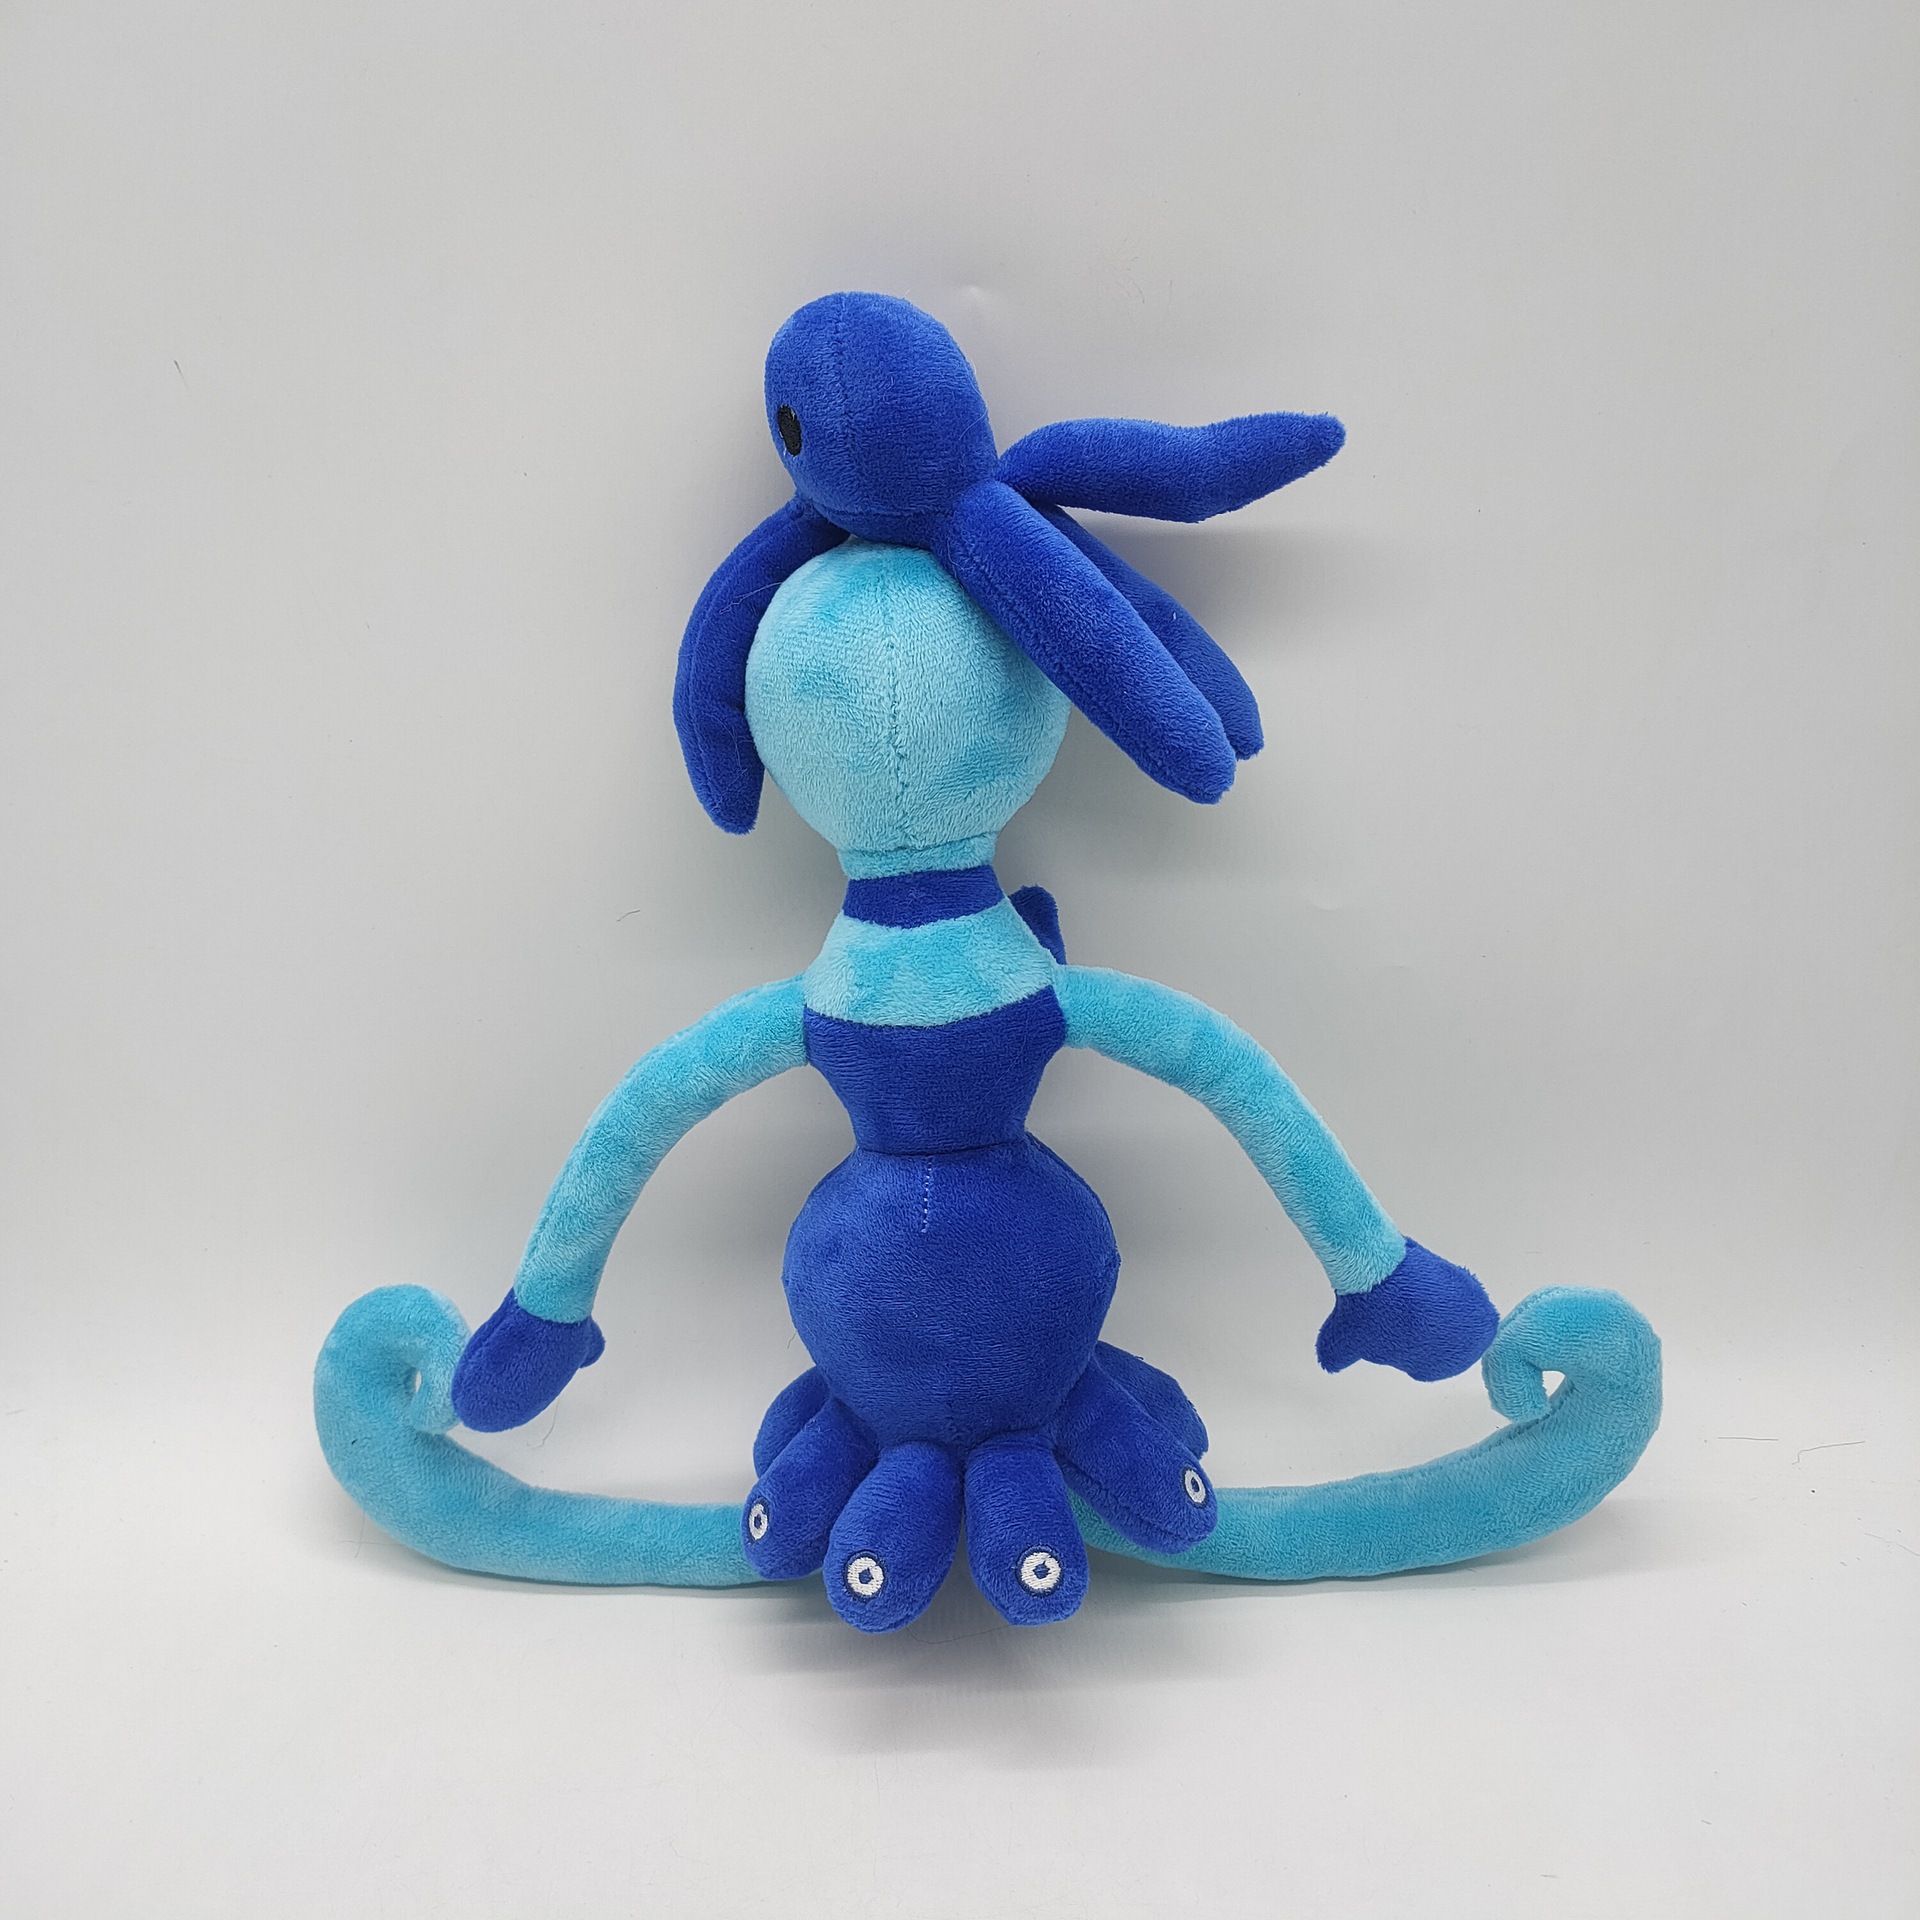 40 cm octopus mama lange benen pluche speelgoed schattige zacht gevulde poppen voor kinderverjaardagscadeau